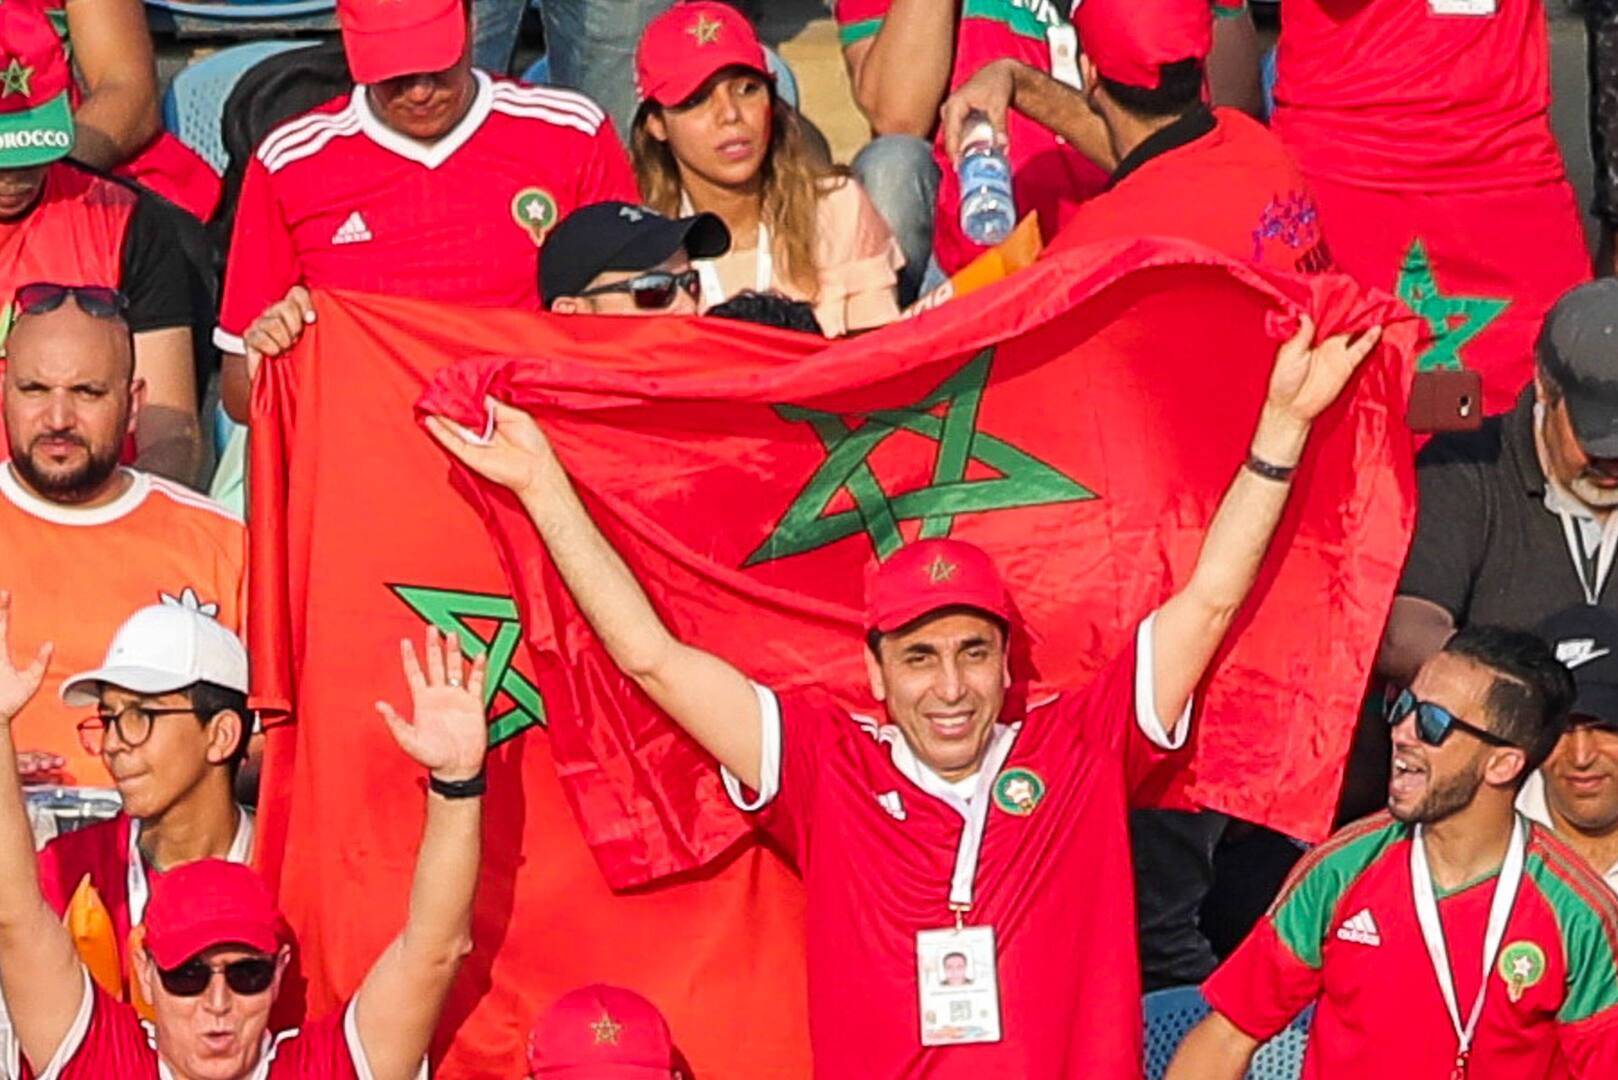 المنتخب المغربي يحقق أرقاما قياسية بعد عبور مالاوي